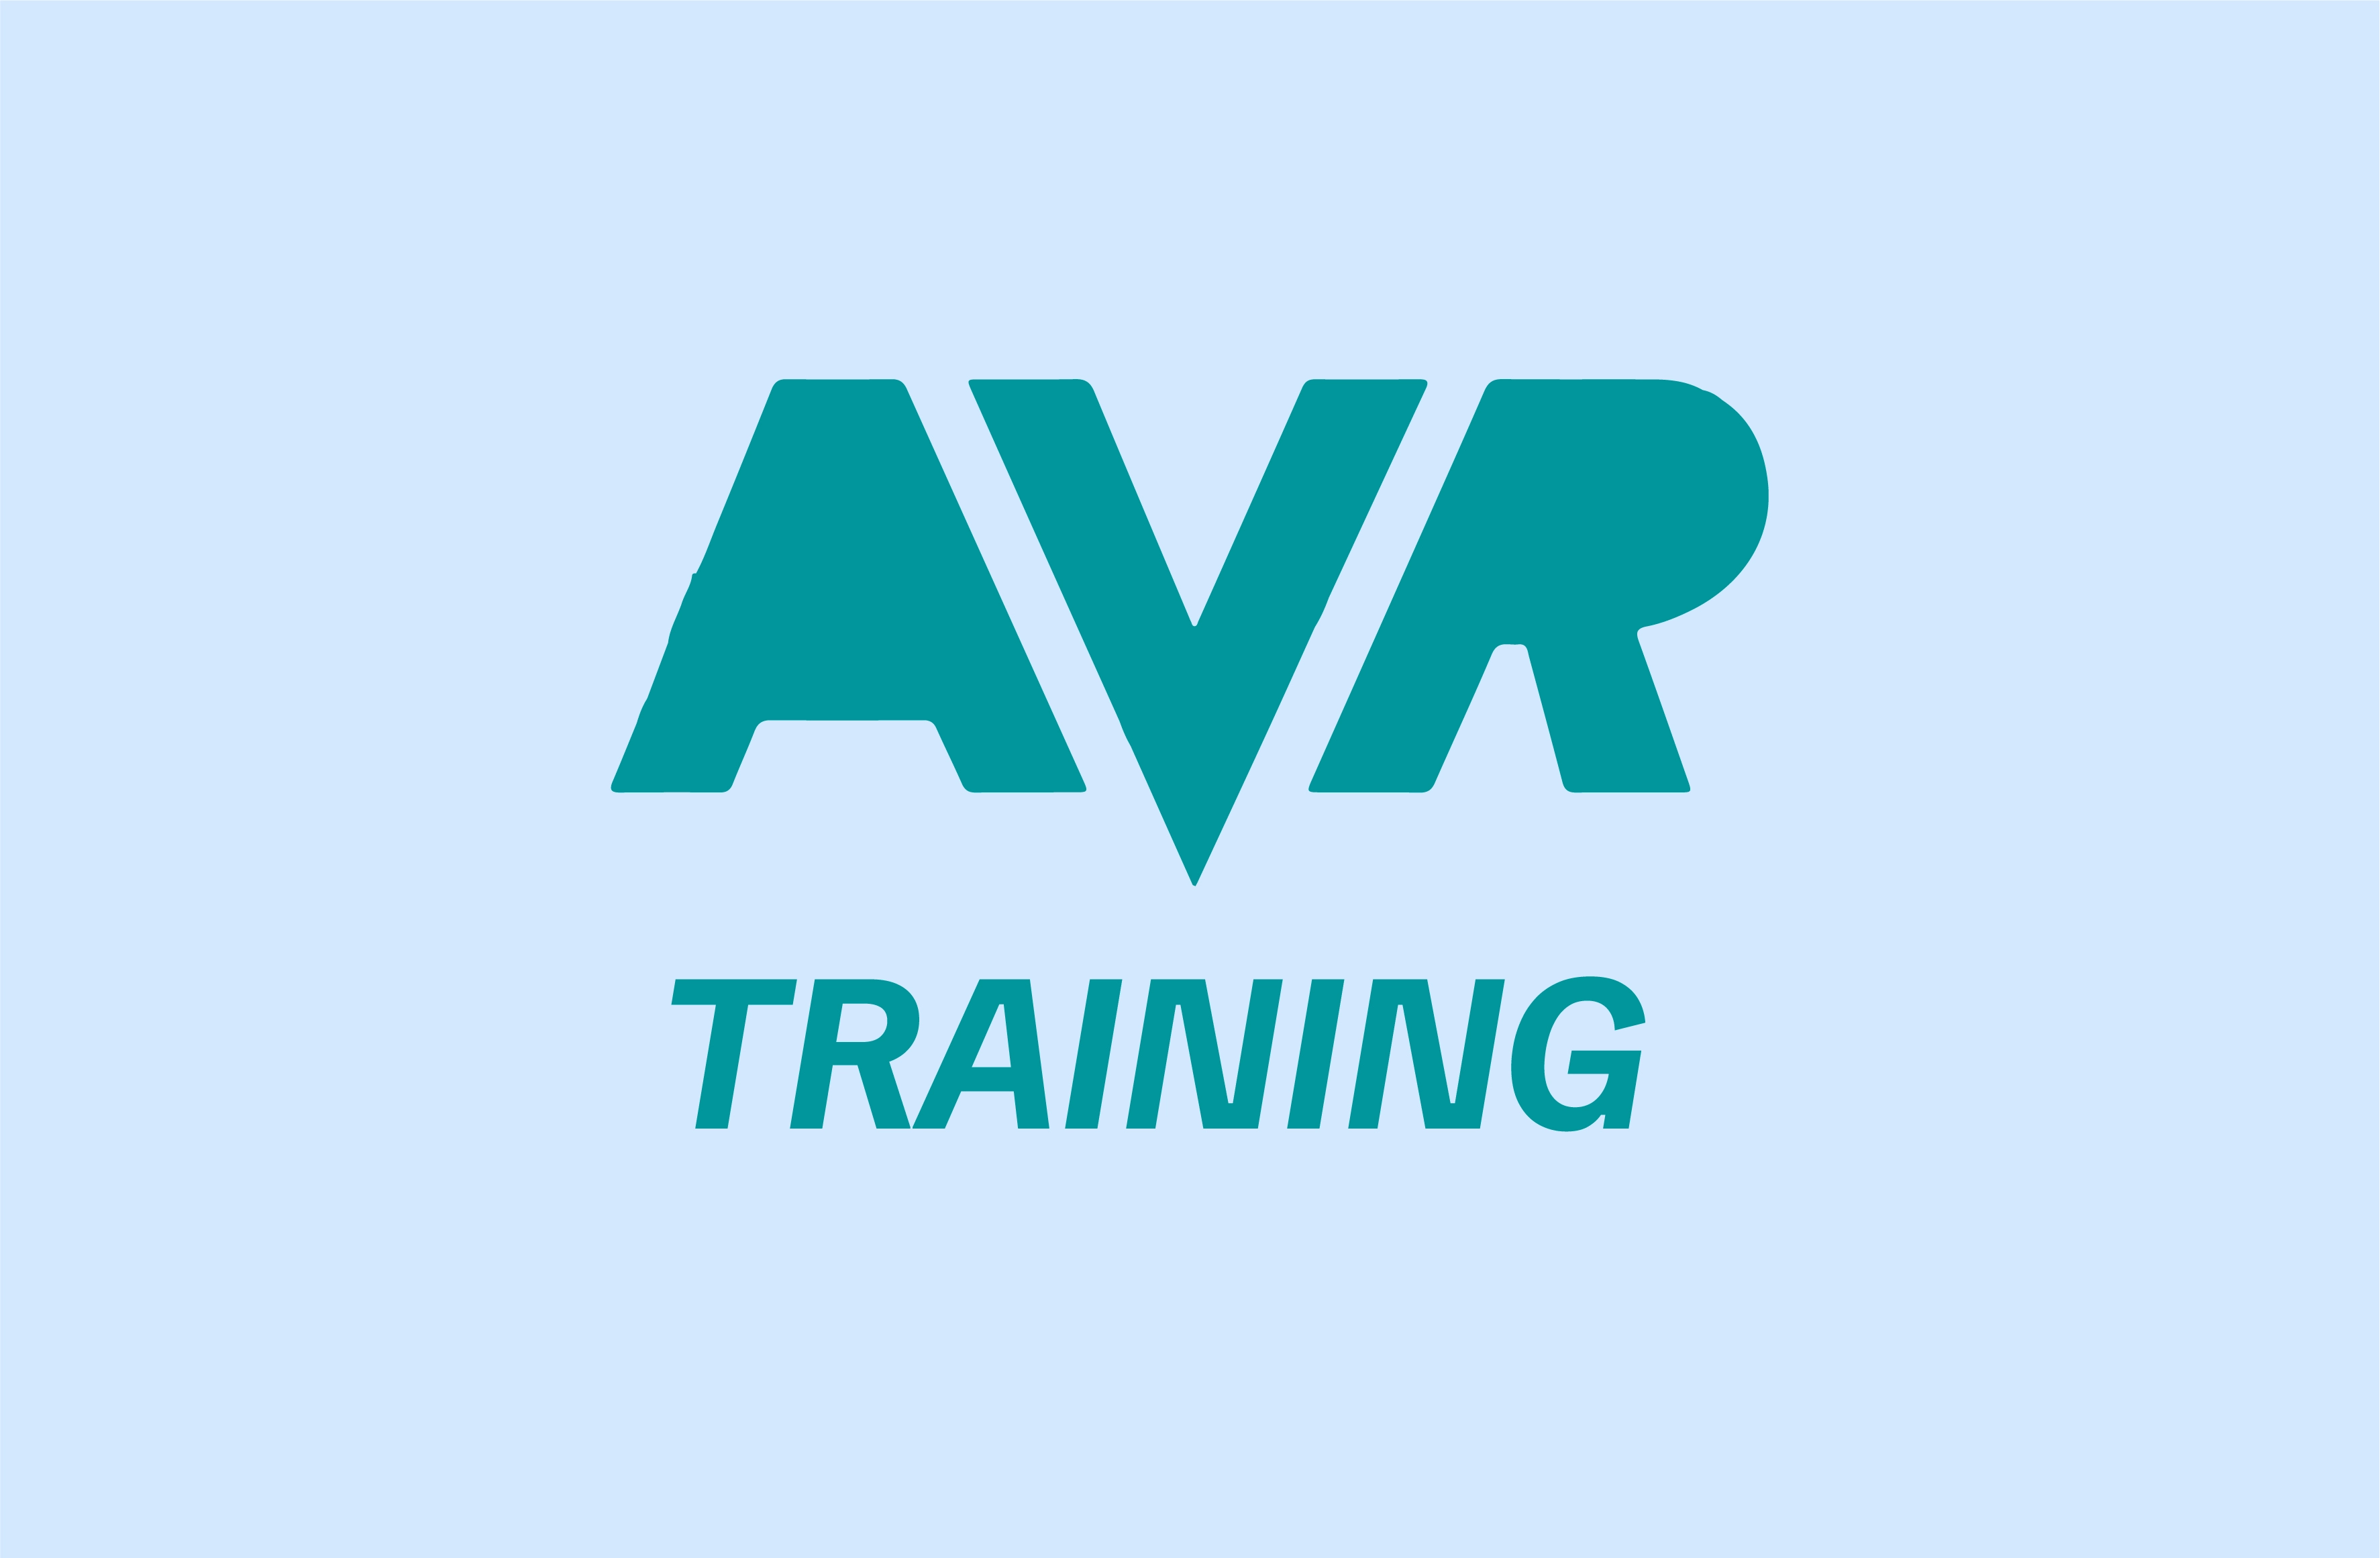 AVR Training